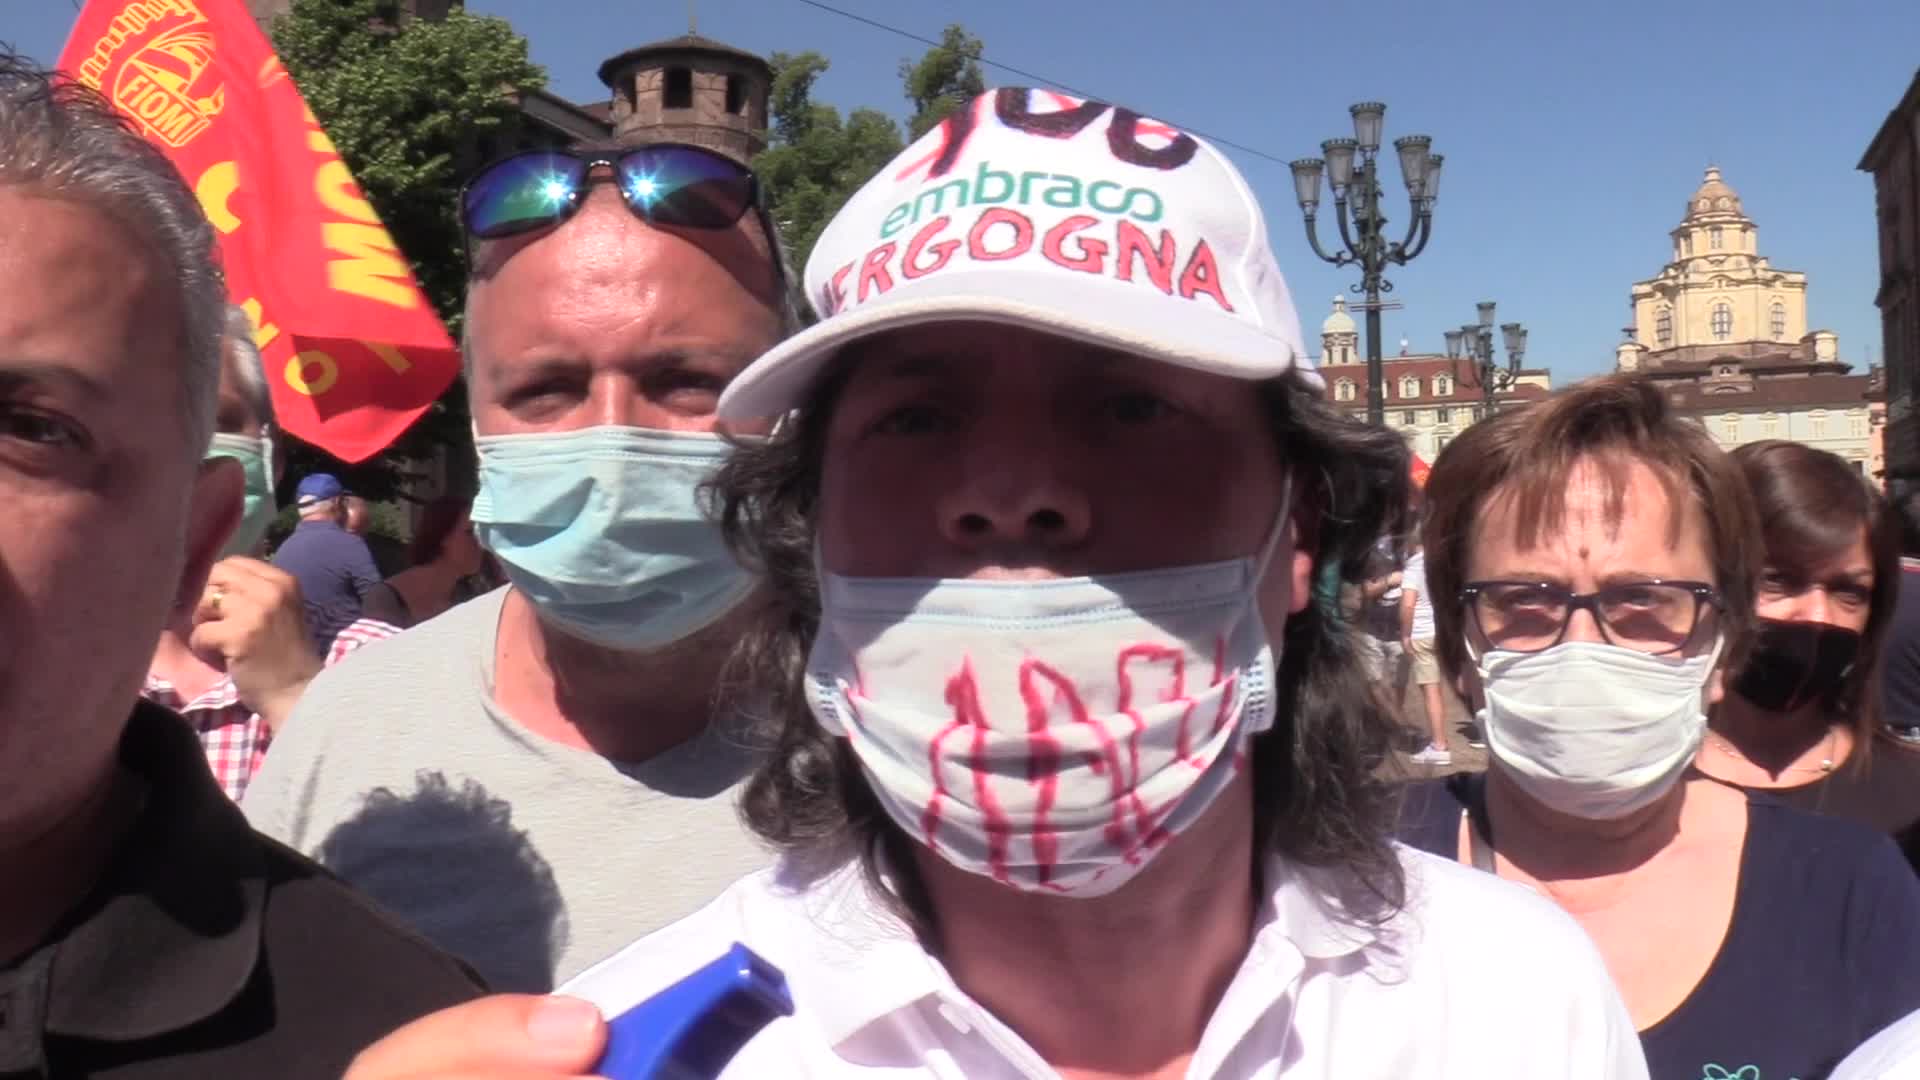 Ex Embraco, lavoratori di nuovo in piazza contro il Governo